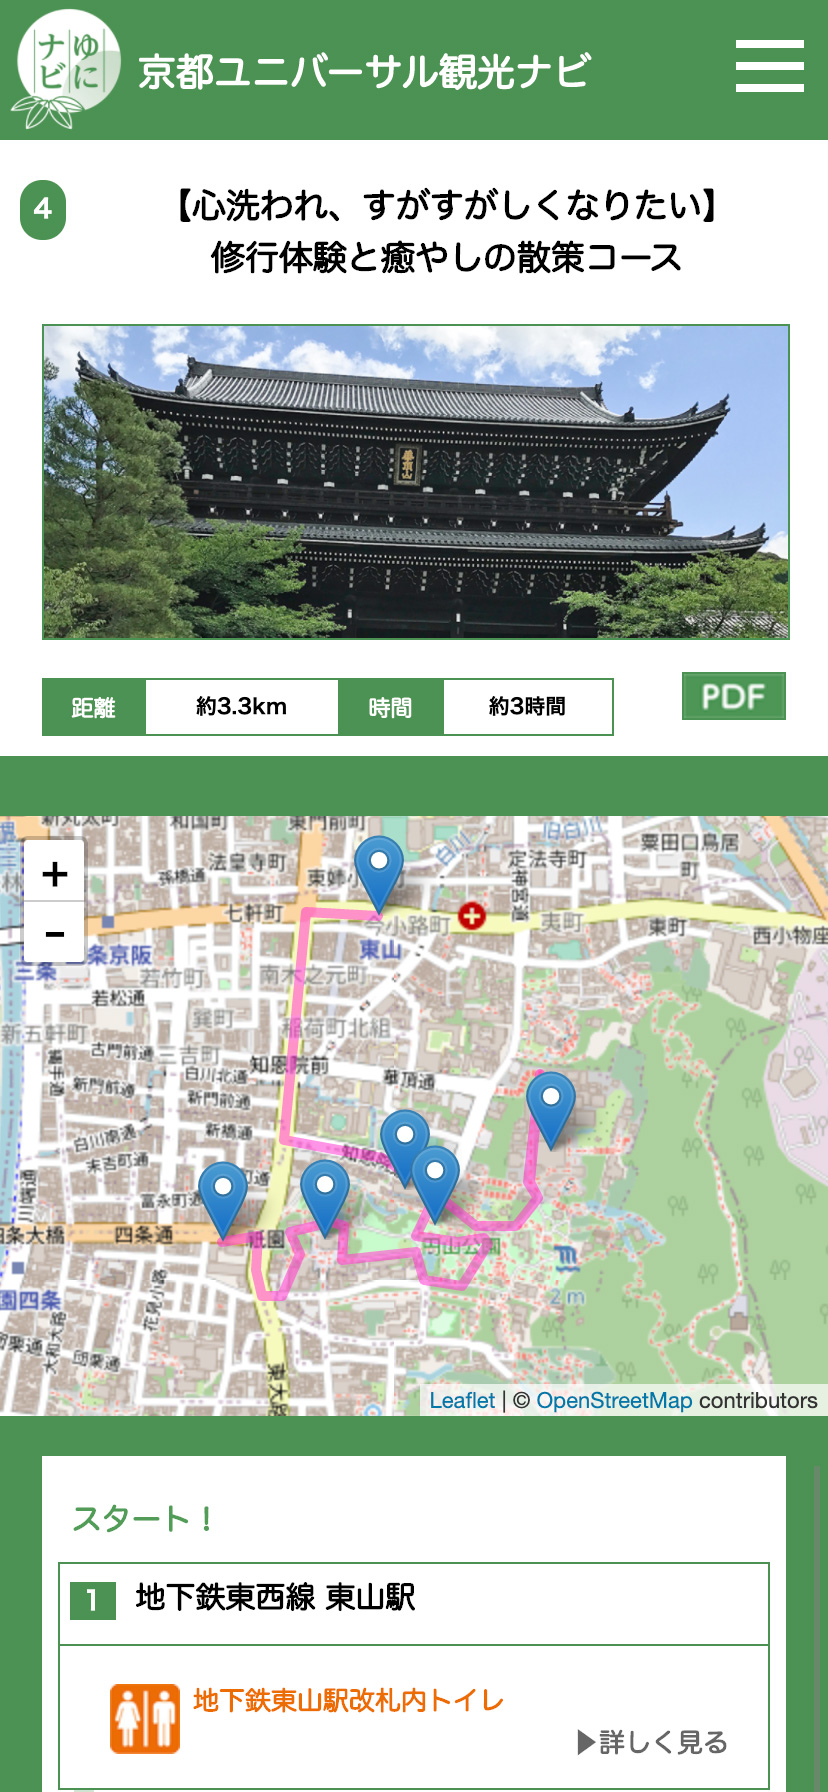 京都ユニバーサル観光ナビ スマホサイト